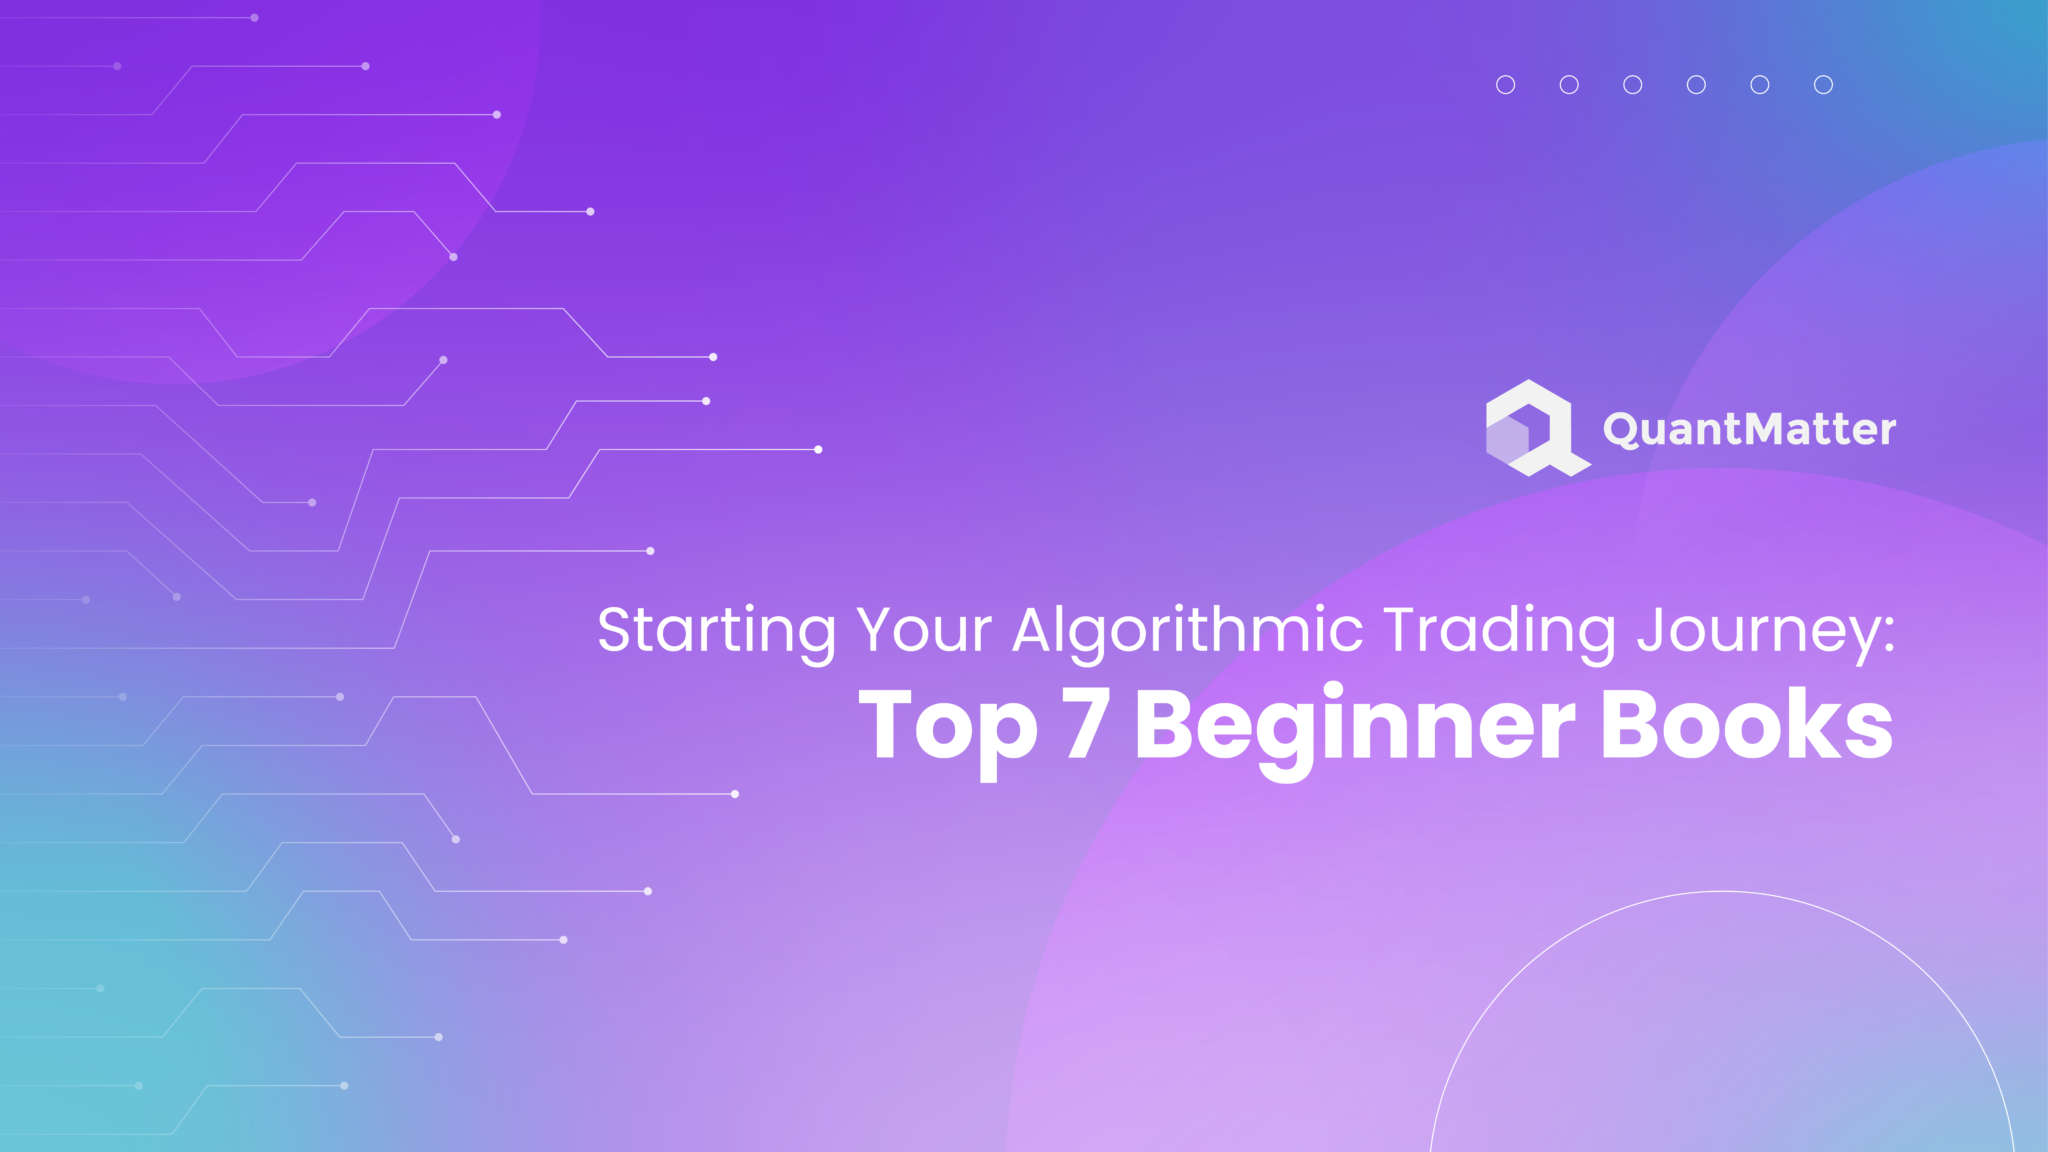 Top 7 Beginner Books for Algorithmic Trading